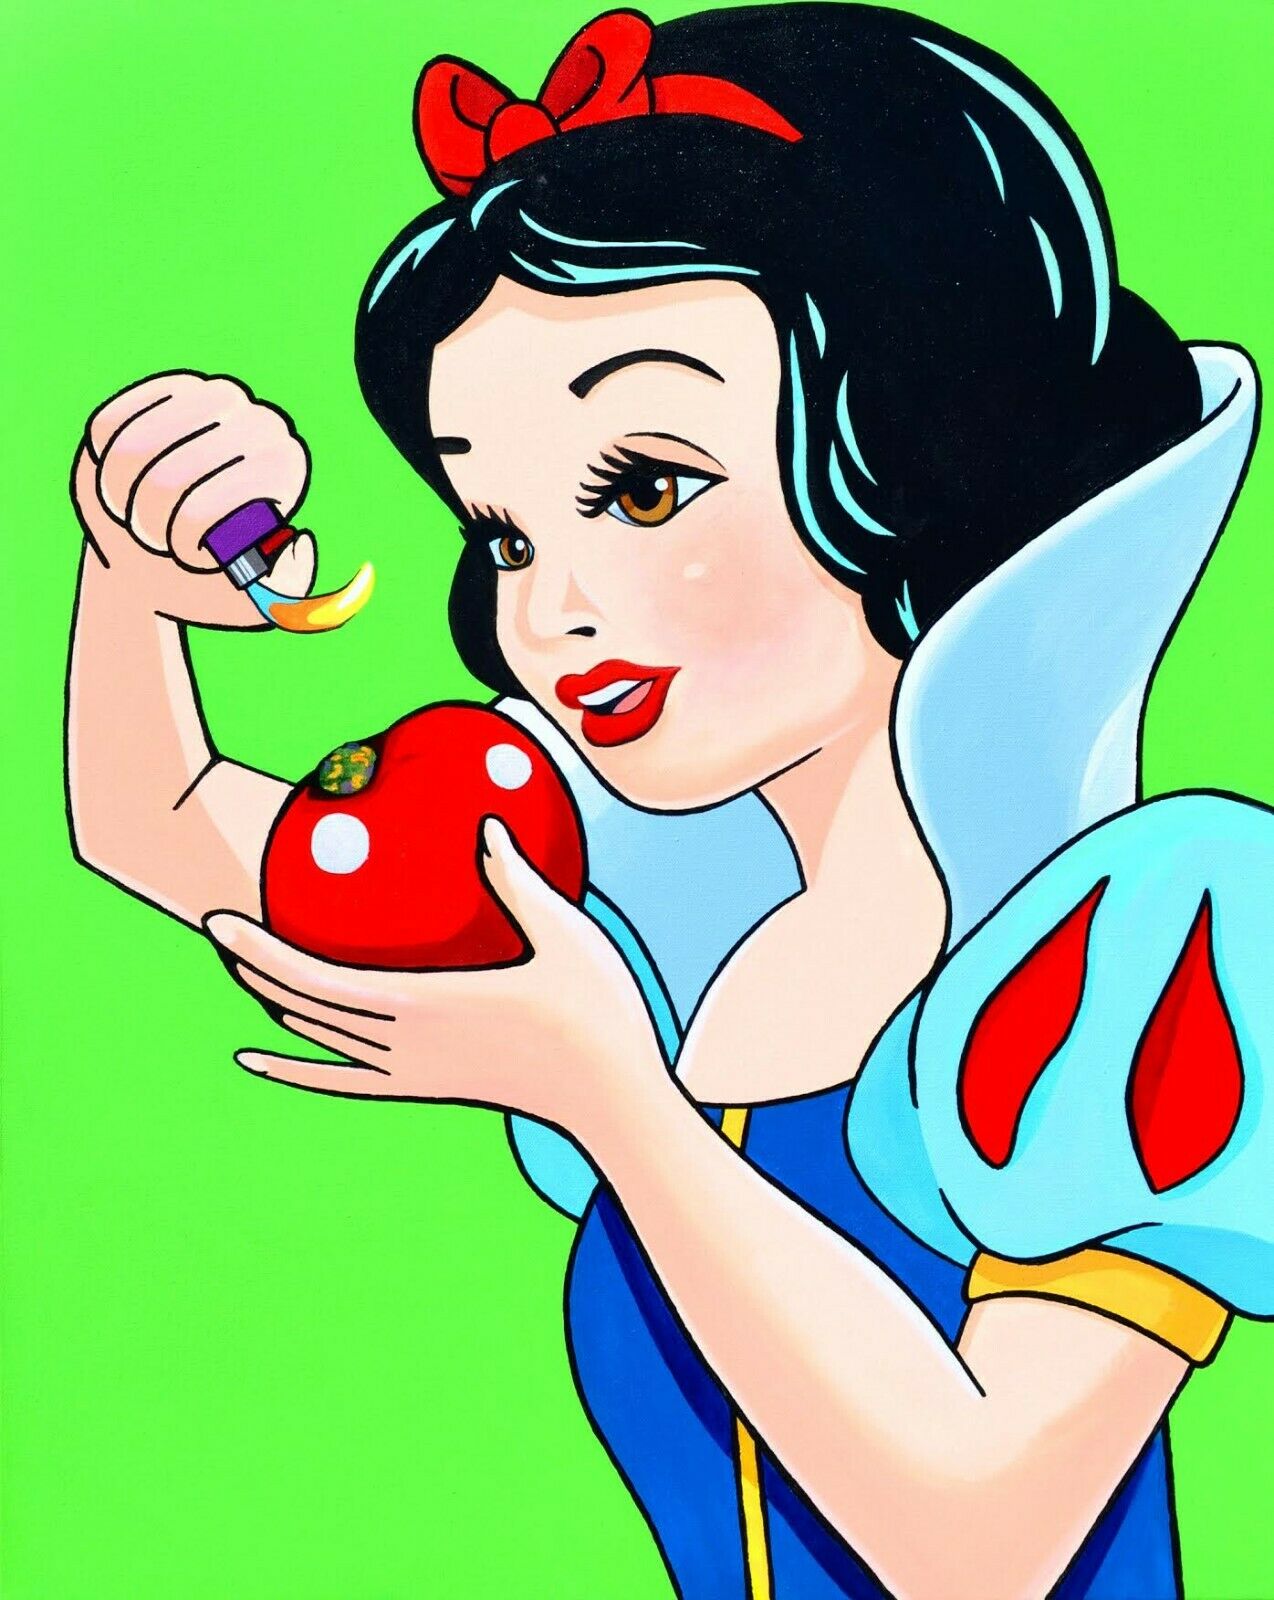 Pot Pipe Snow White Smoking Marijuana from Apple #1 - original painting nu PAPA Art Gallery